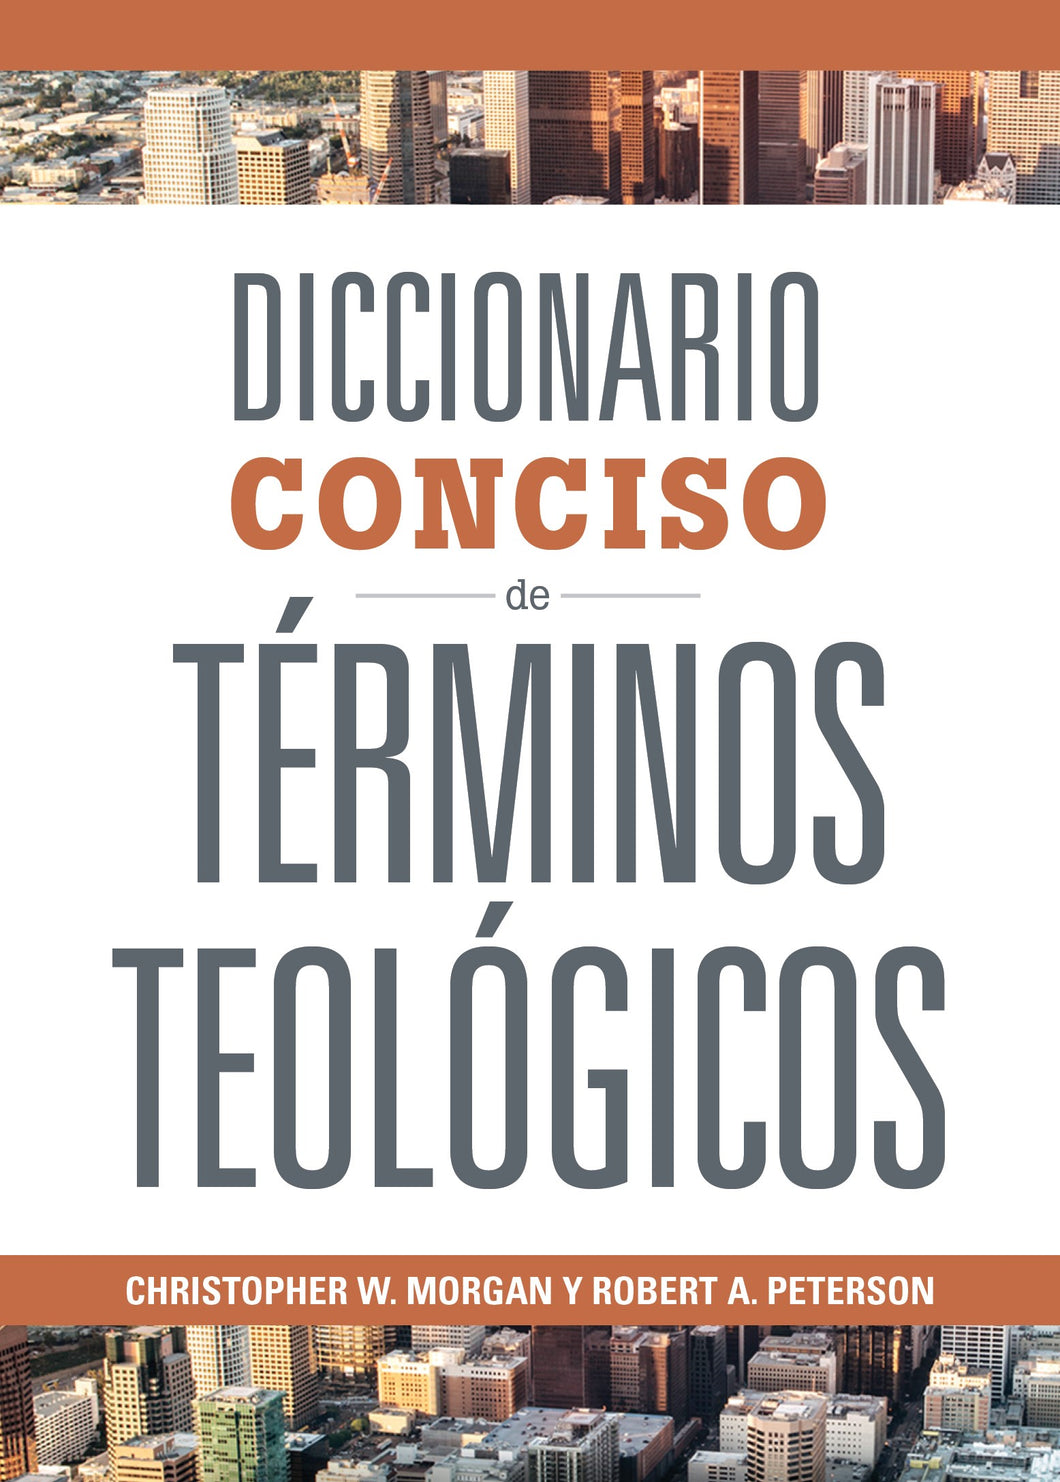 Spanish-Concise Dictionary Of Theological Terms (Diccionario Conciso de Terminos Teologicos)